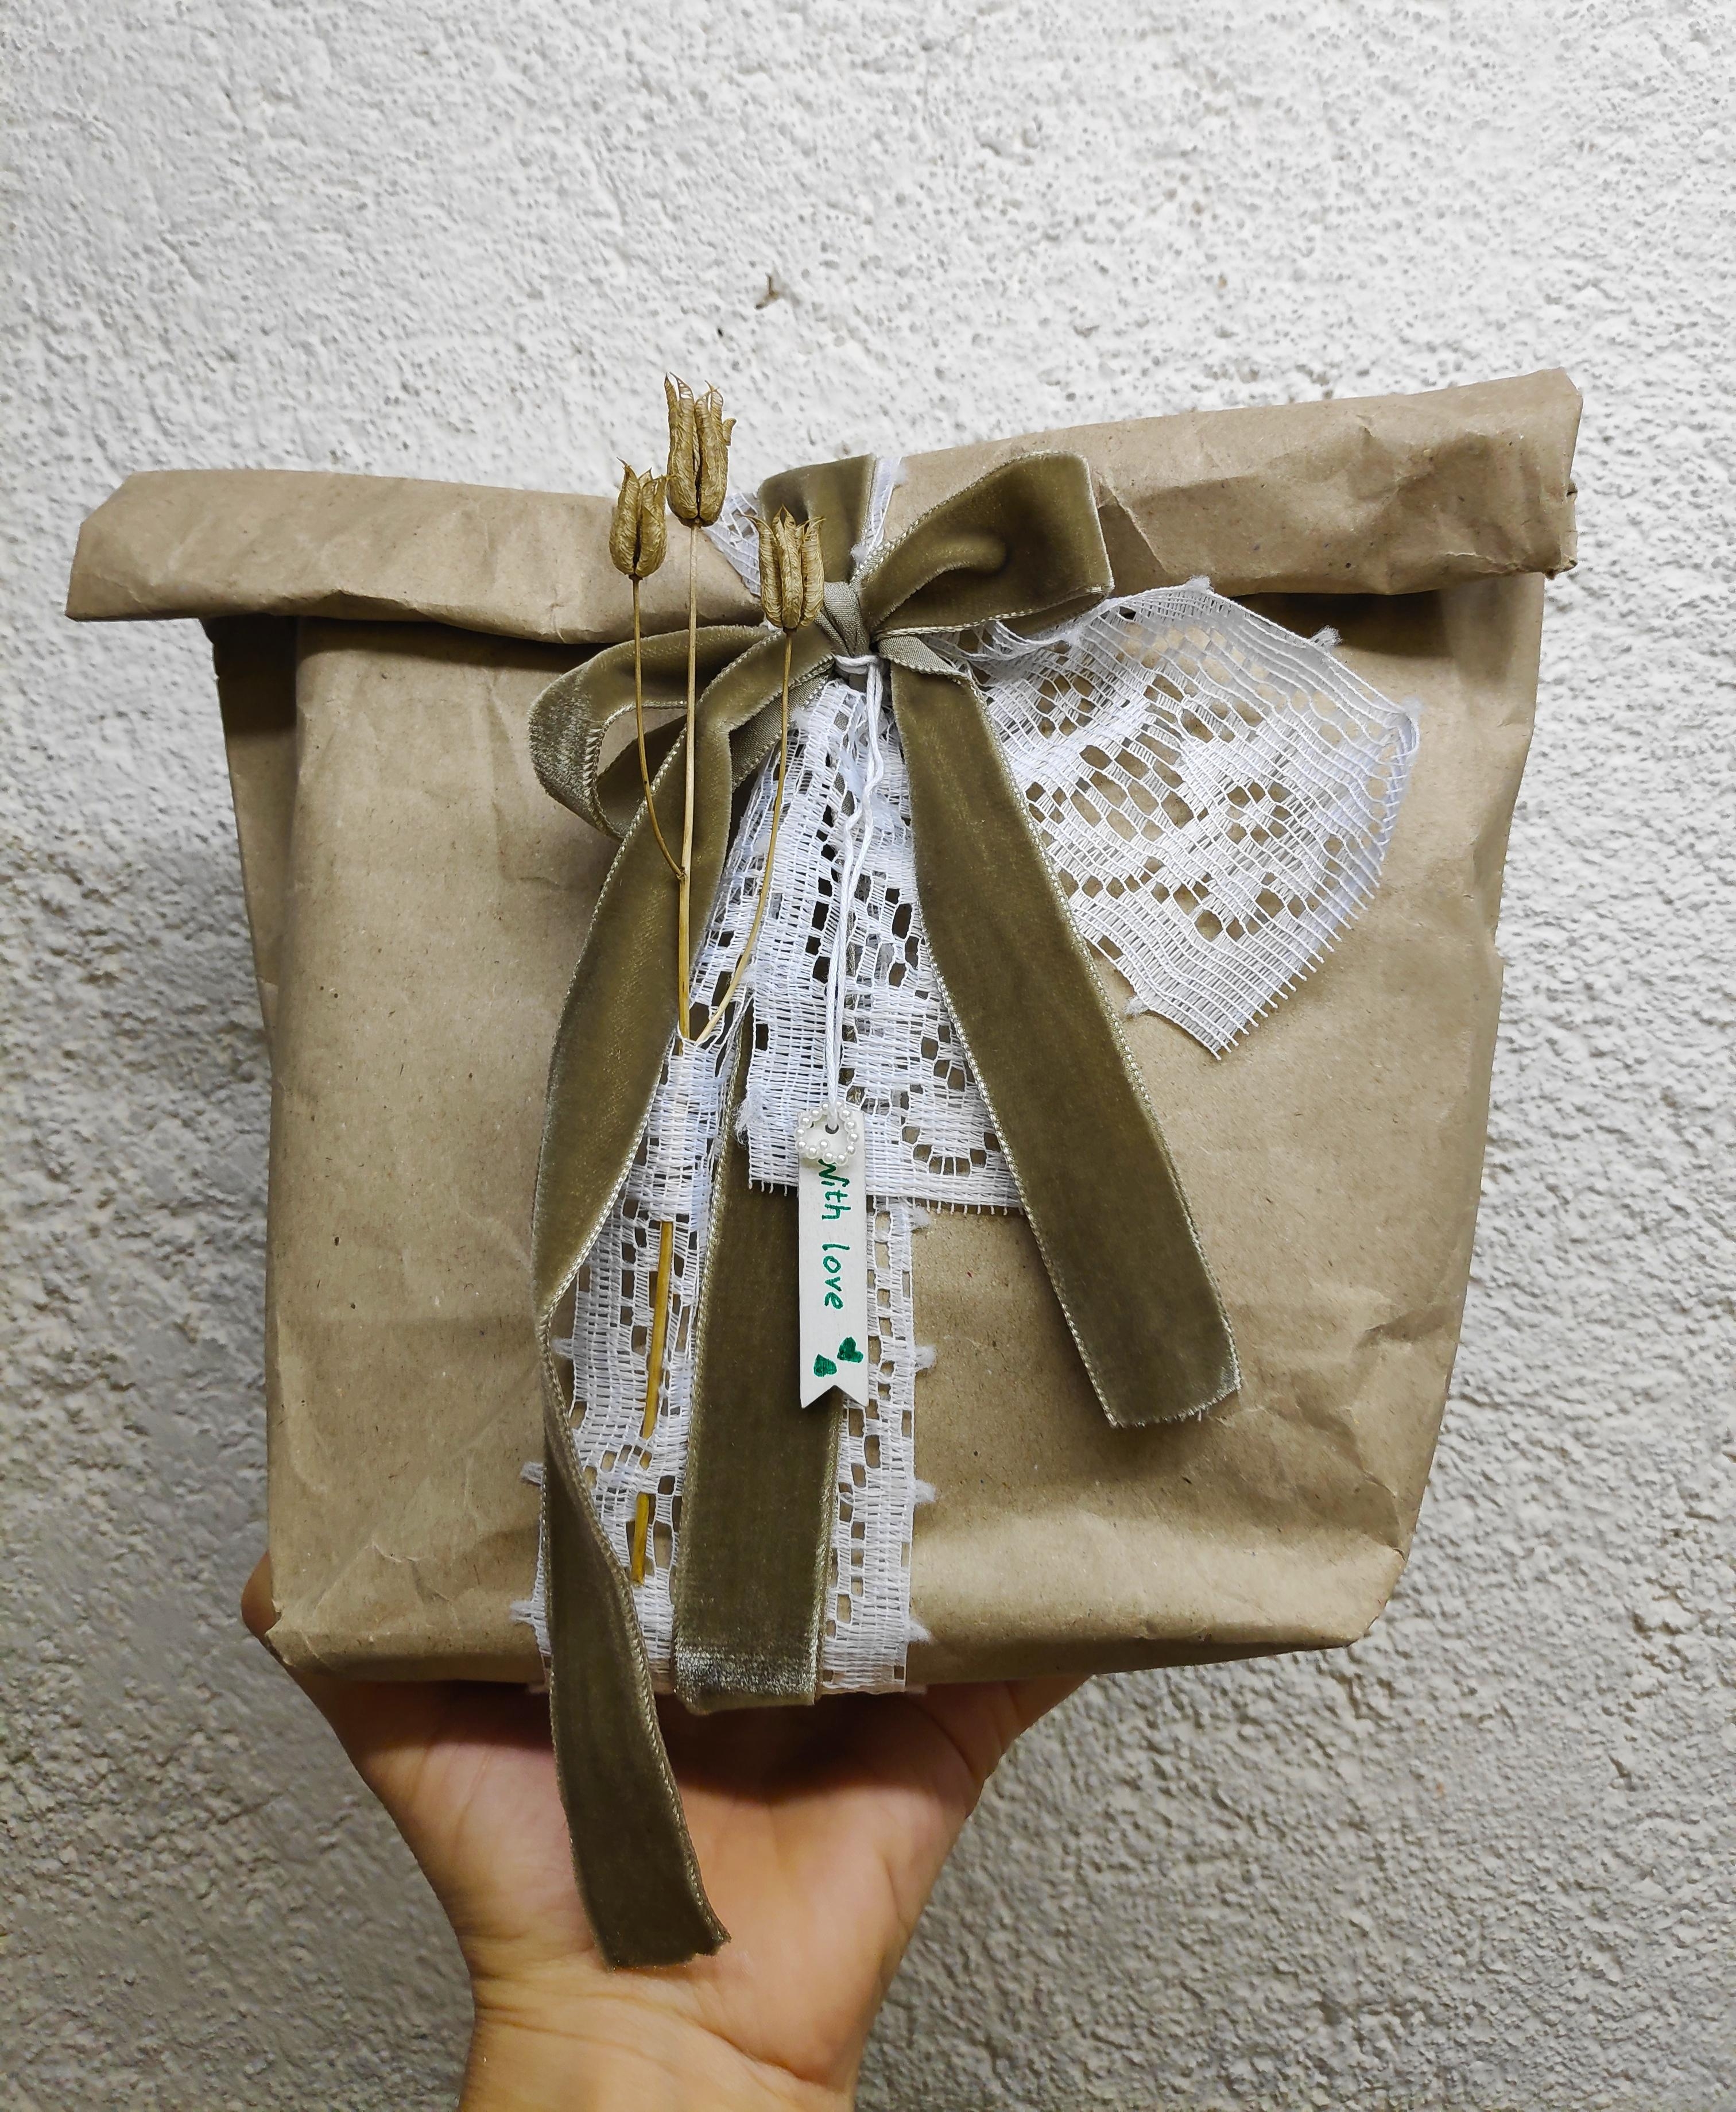 .Einfach, romantisch, Details.
#Geschenk #Geschenkverpackung #verpacken